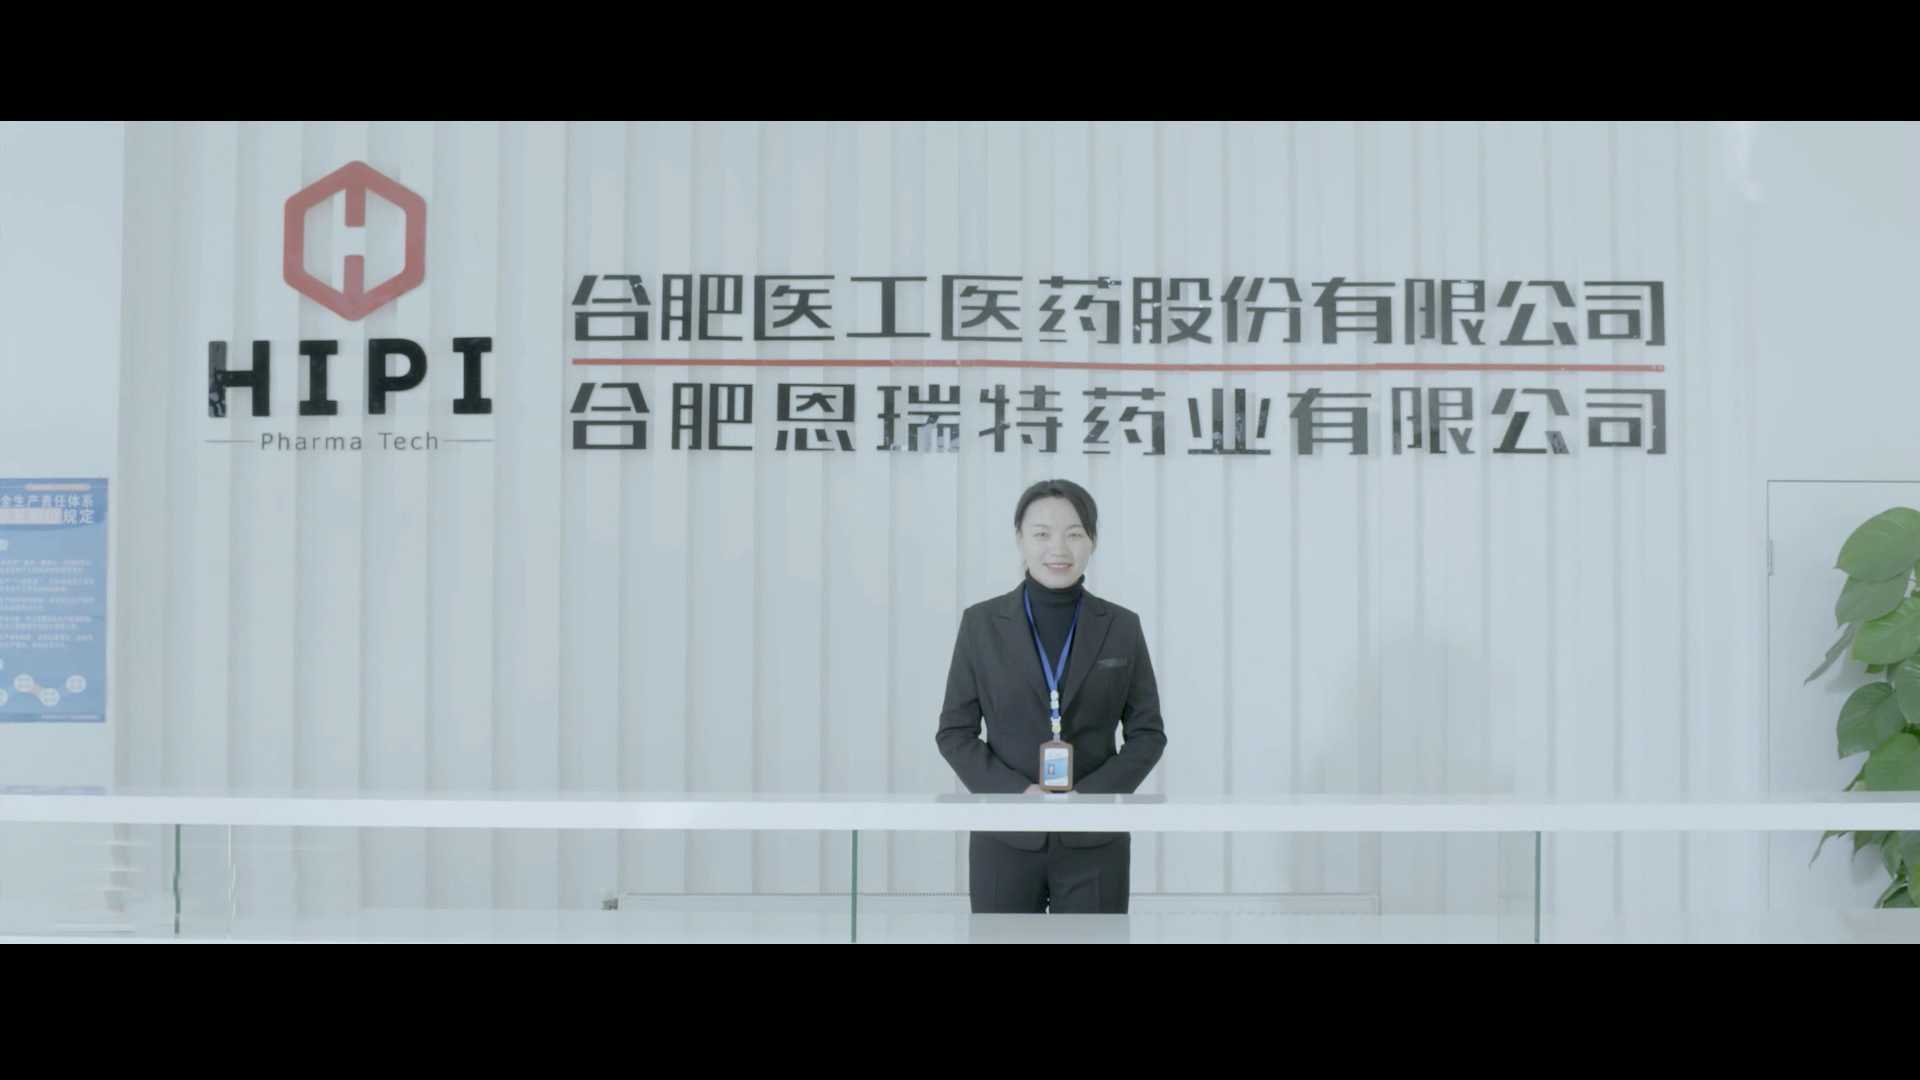 合肥医工医药股份上市企业宣传片